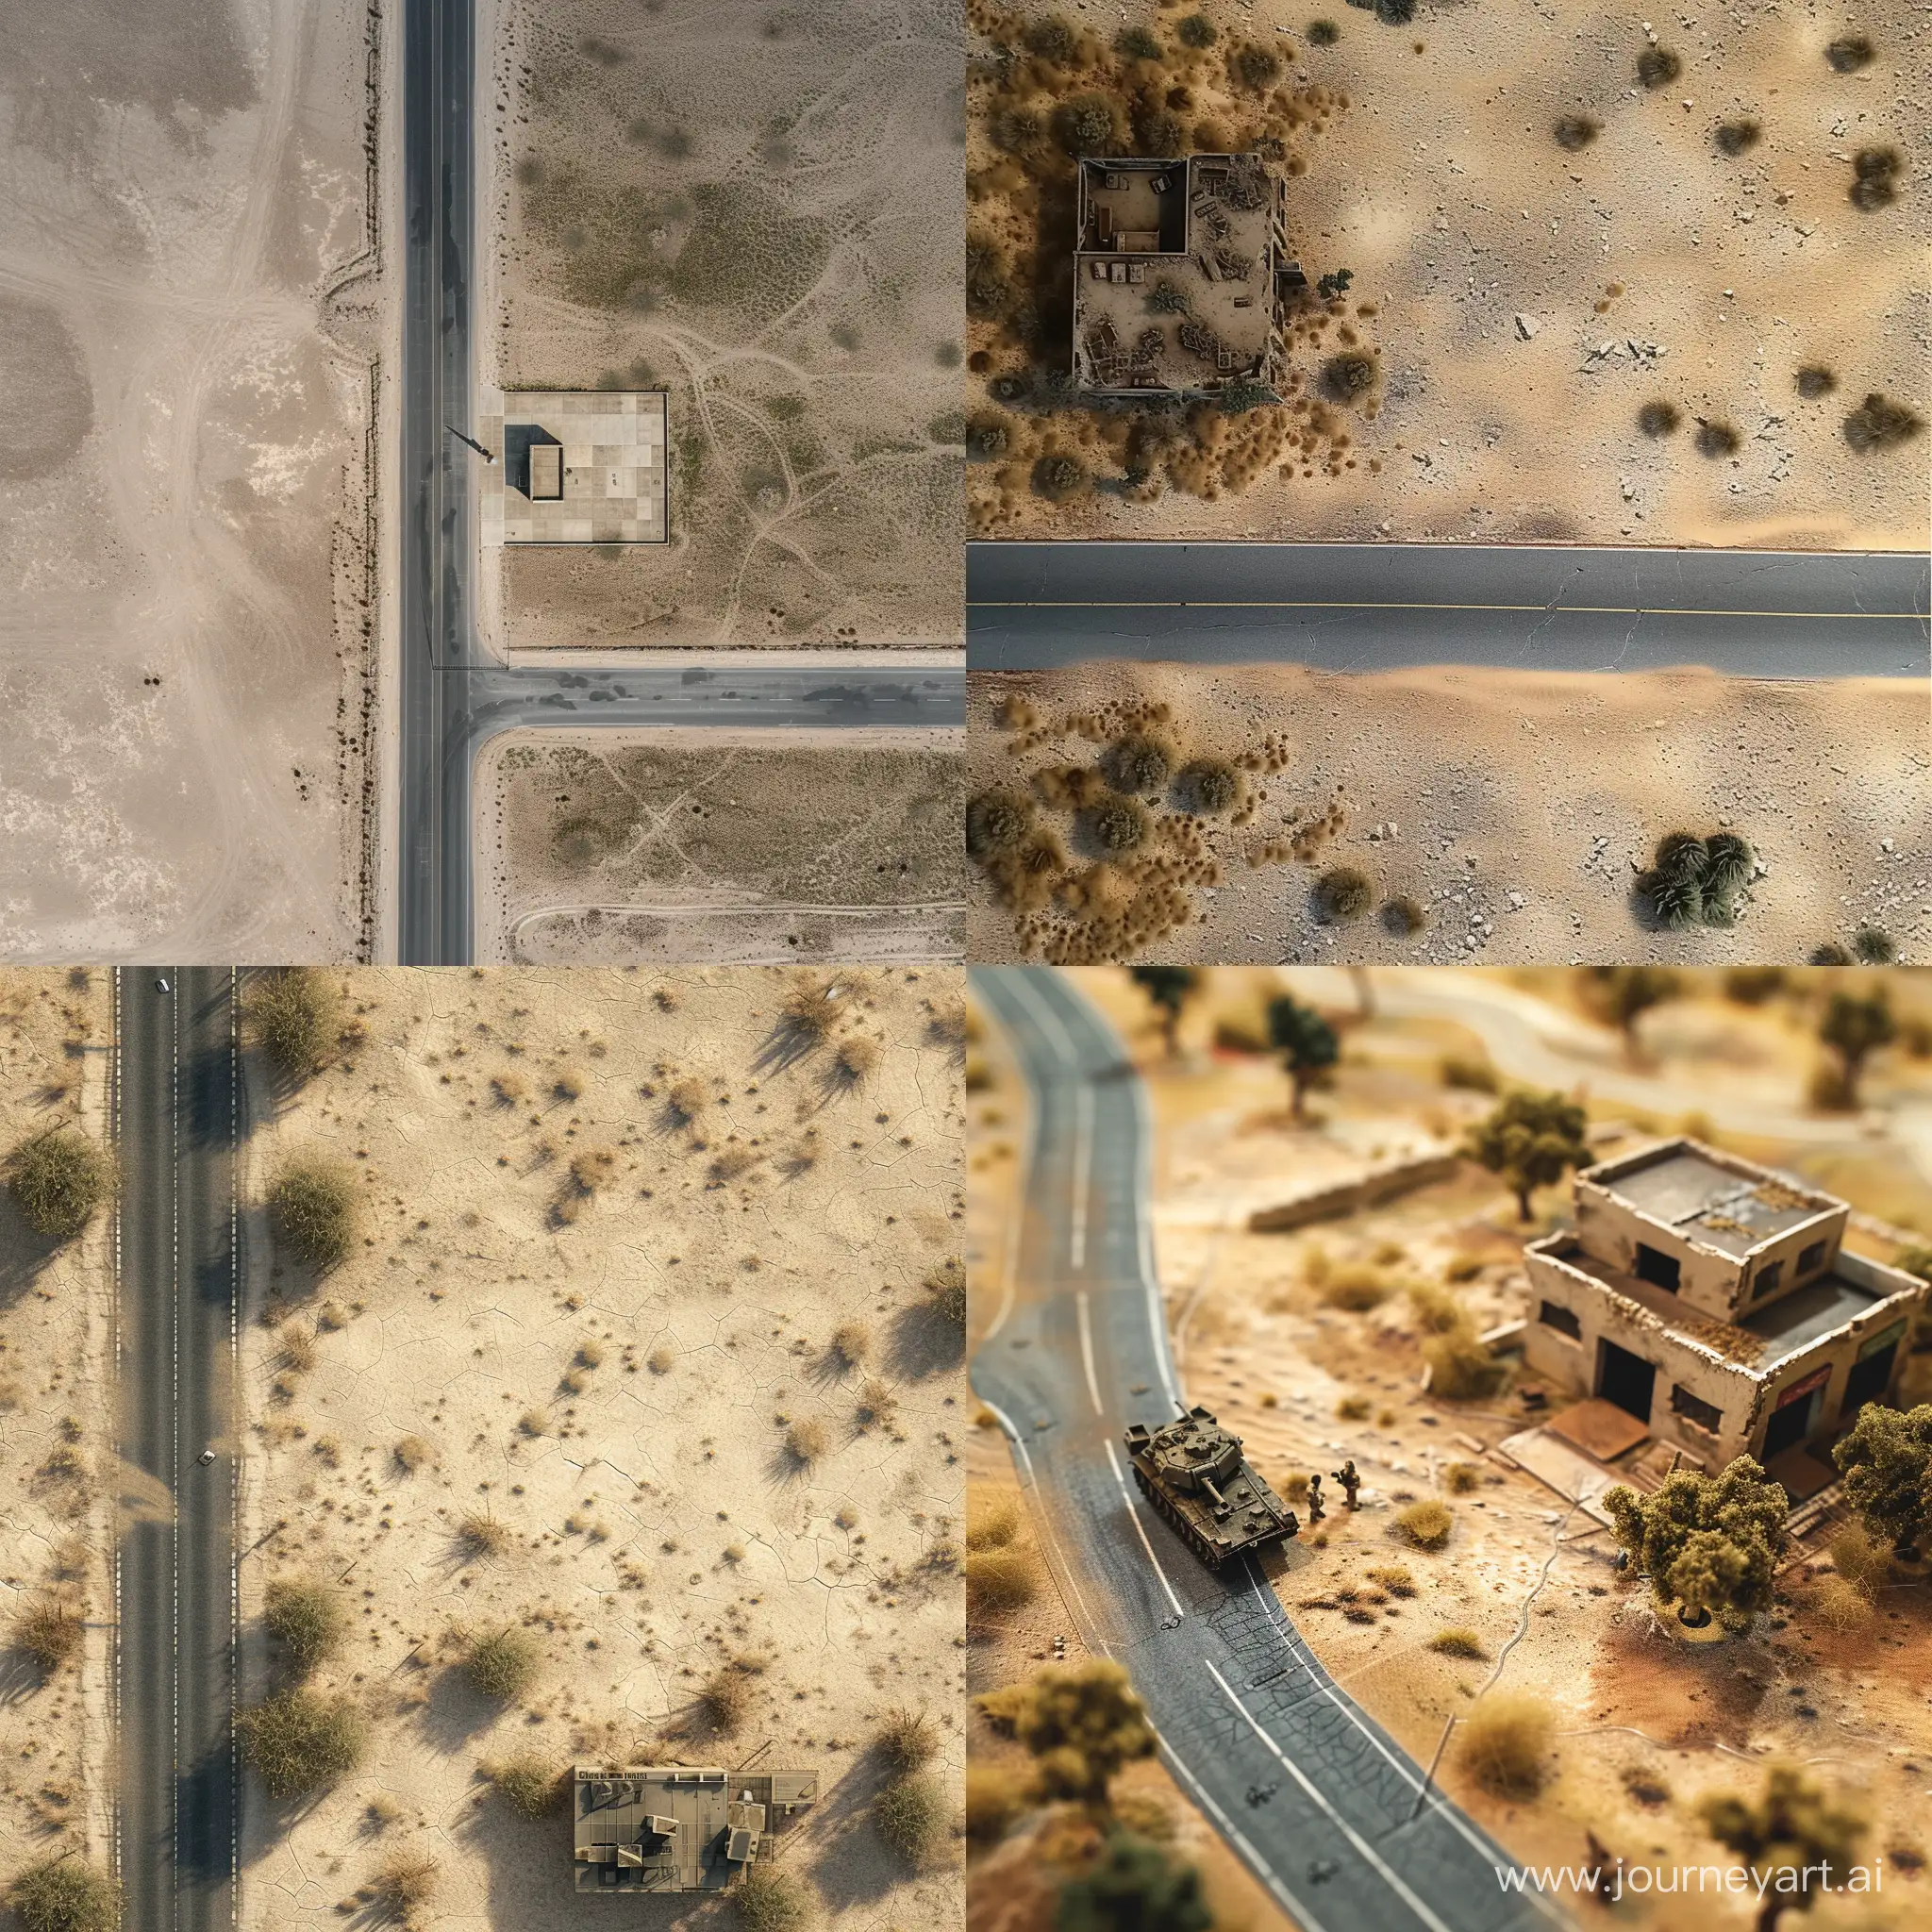 поле для настольной игры, голая пустыня, асфальтированная дорога и одиноко стоящее, небольшое строение военного назначения, вид строго сверху
